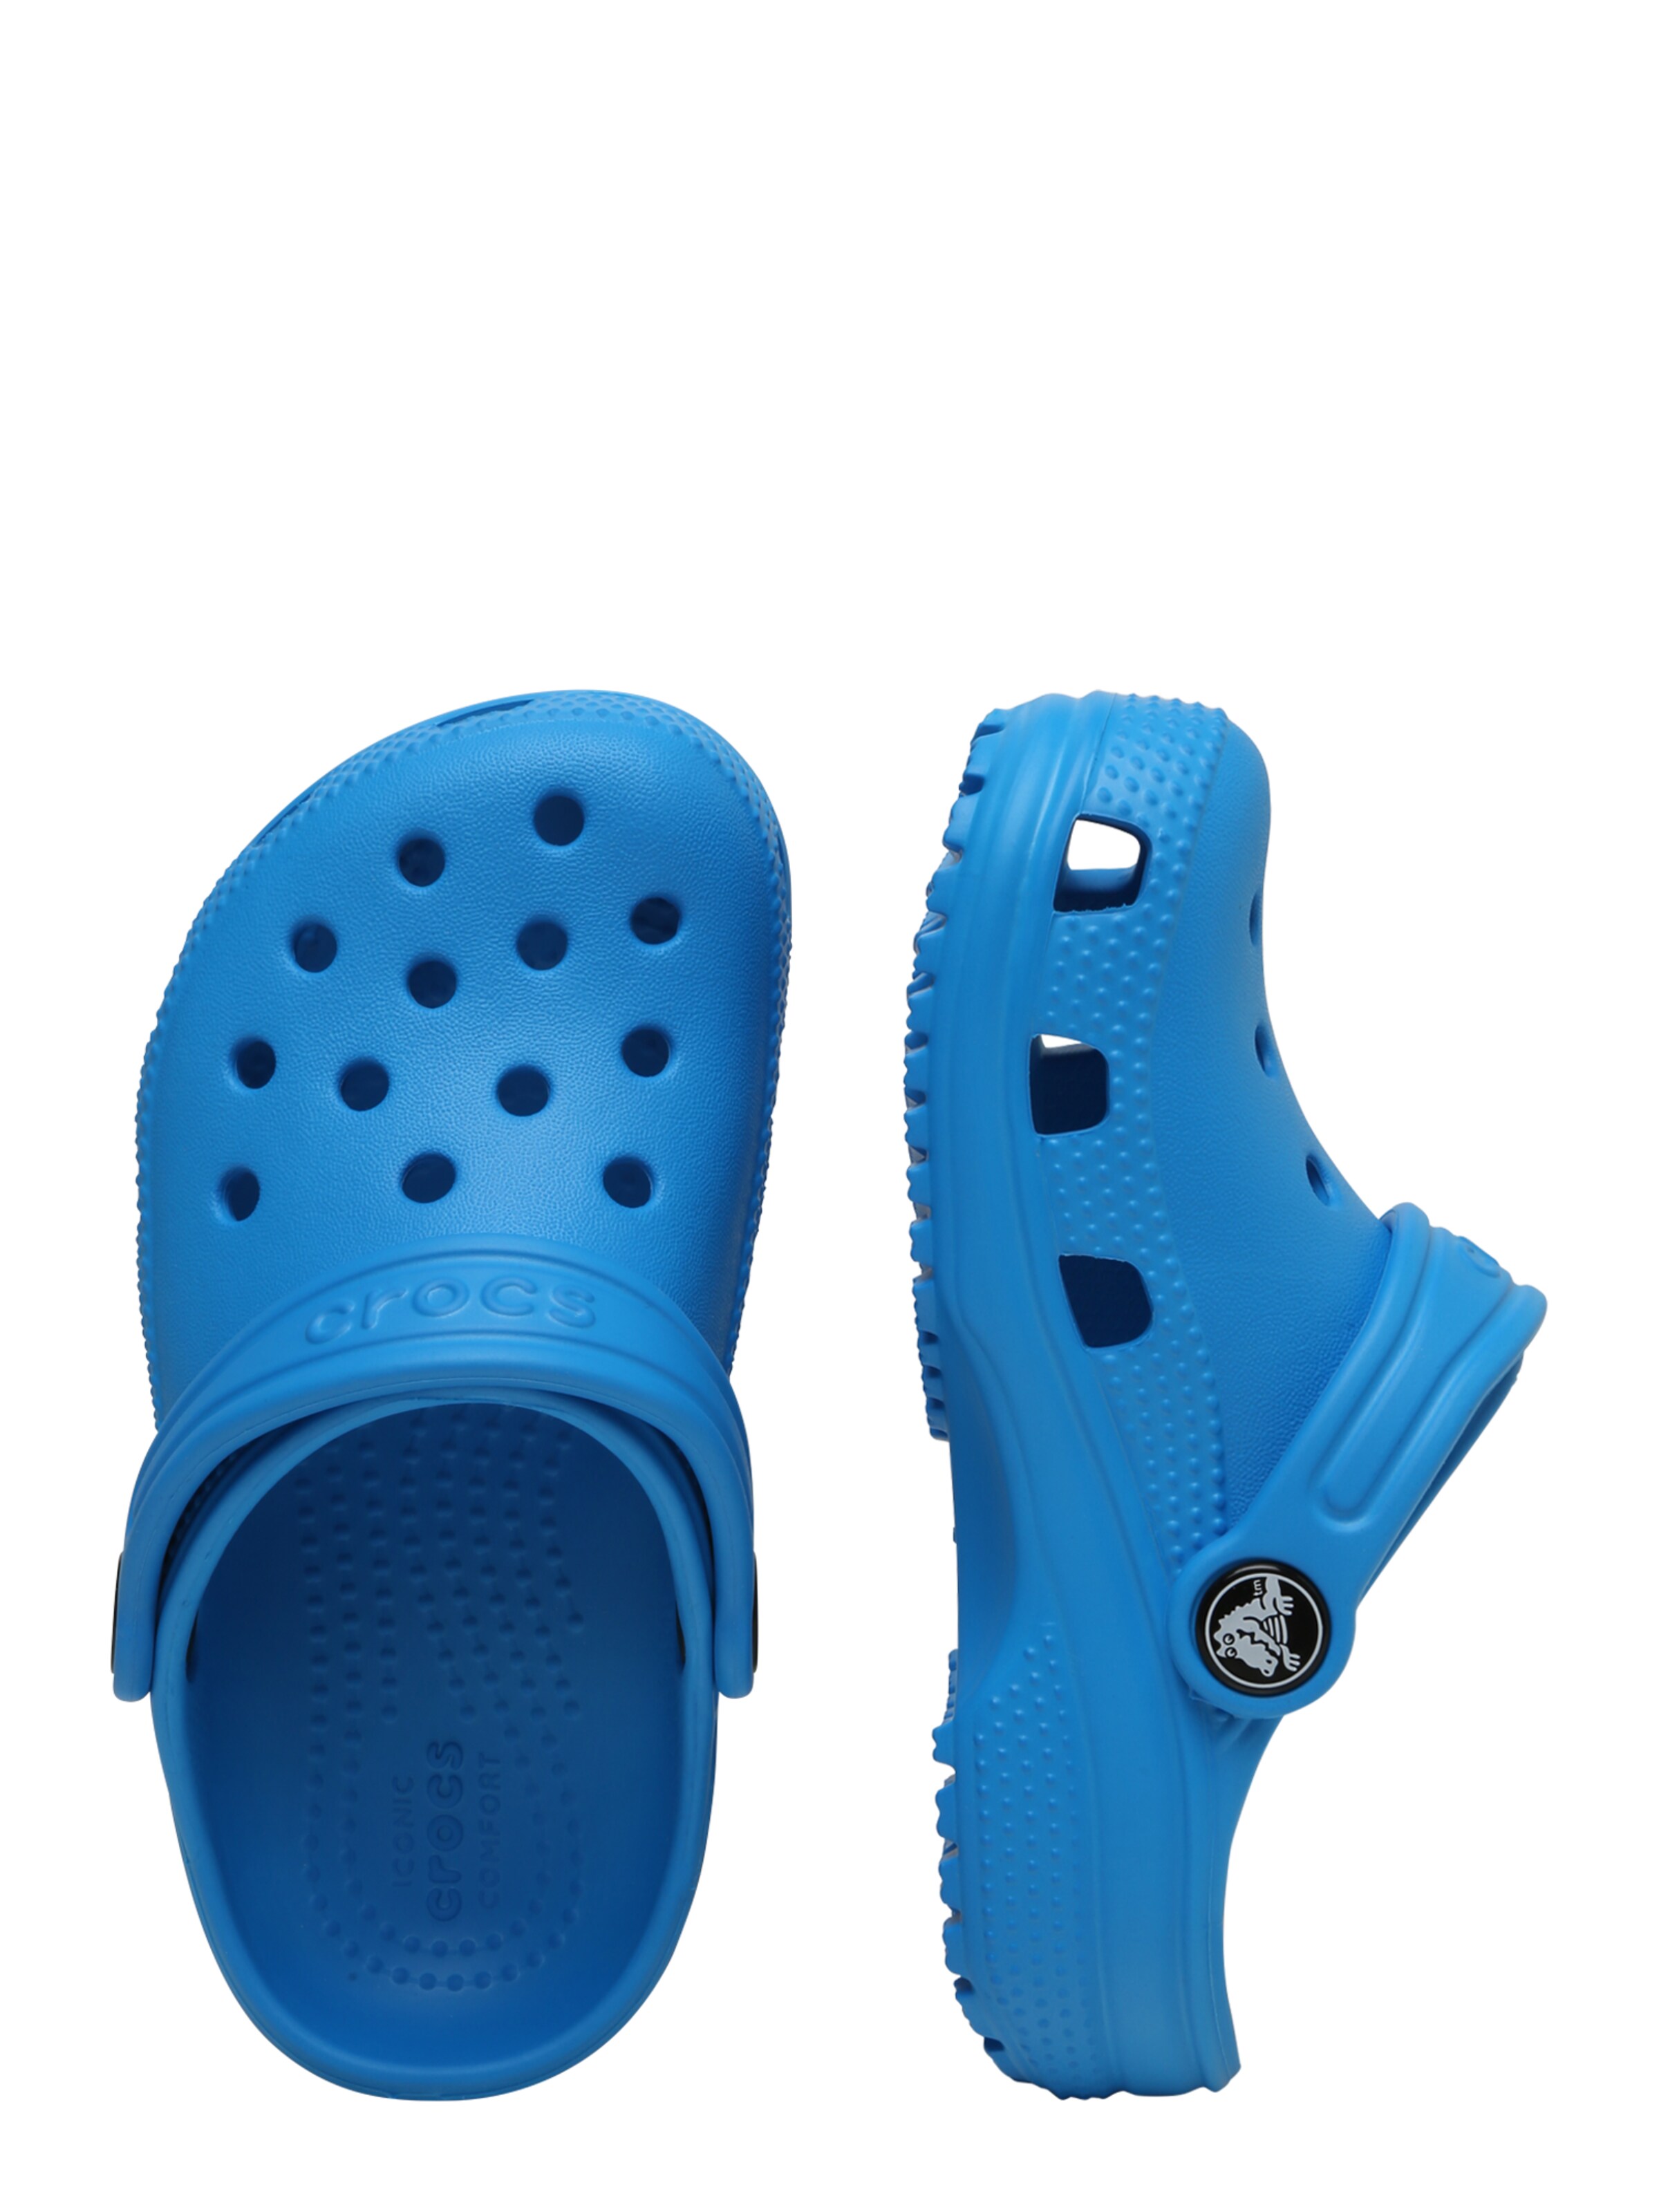 Kinder Teens (Gr. 140-176) Crocs Clogs in Blau - CK24658